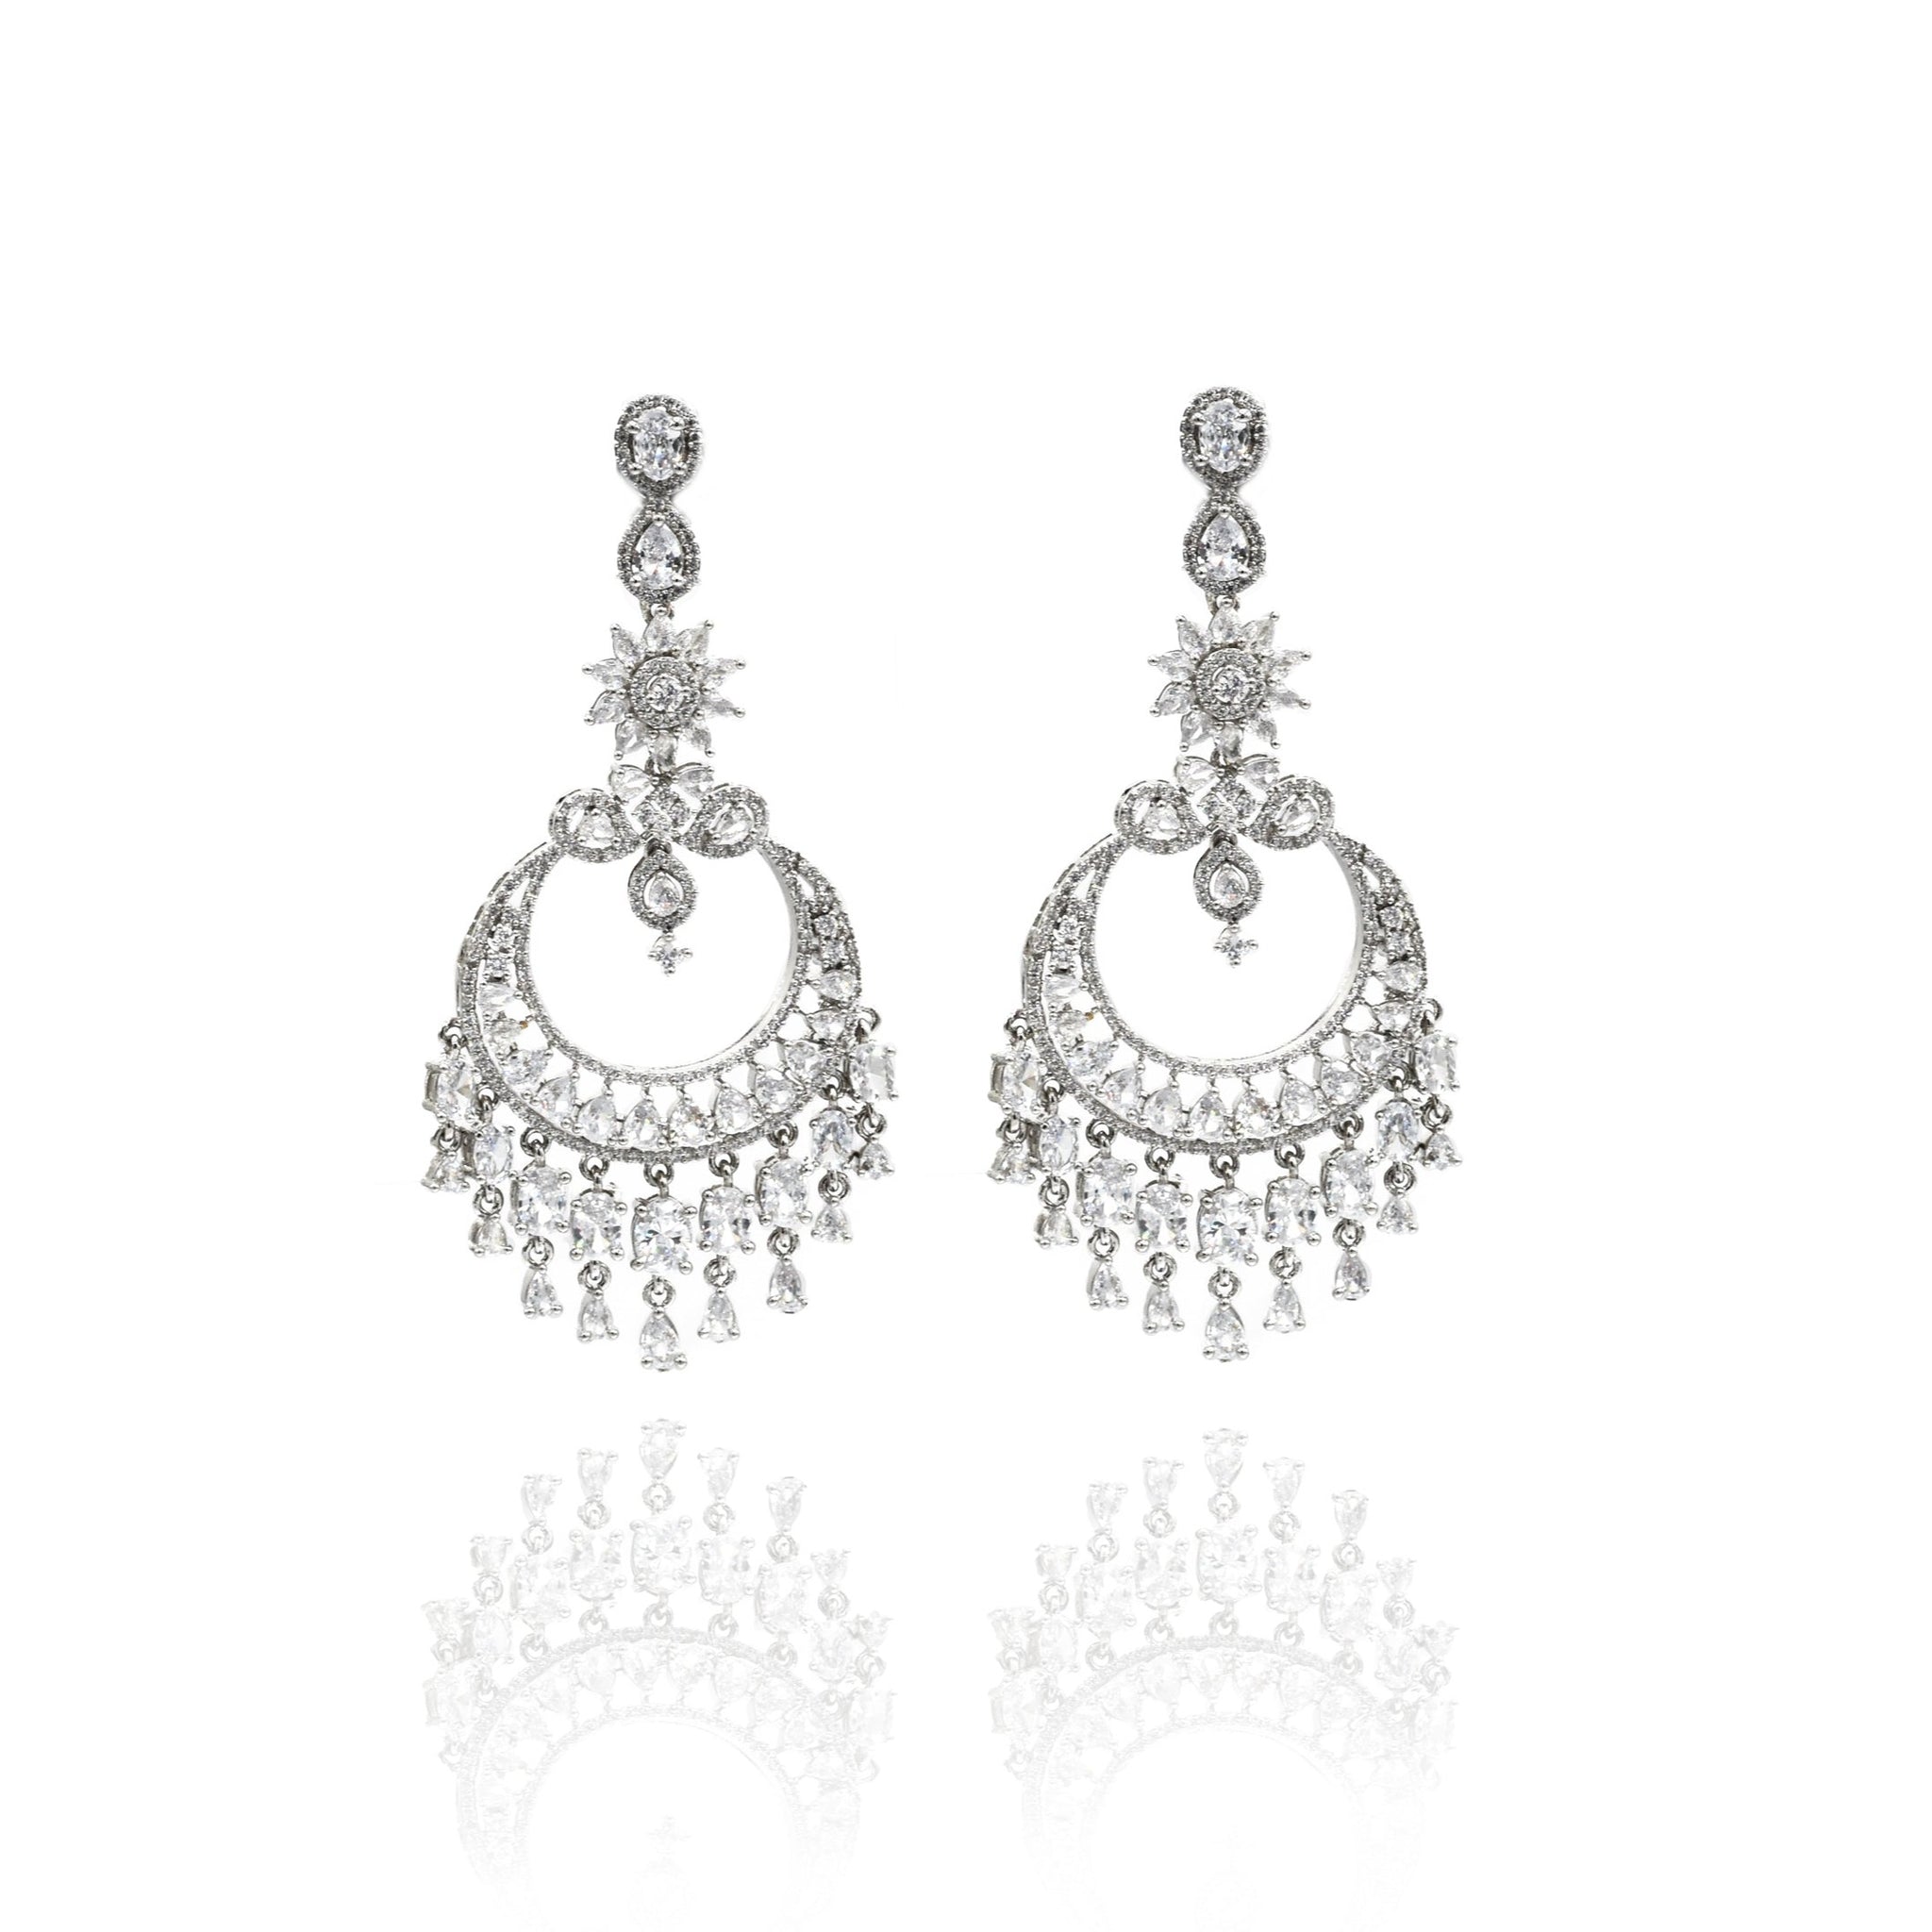 Kareena Crystal Earrings - The Pashm